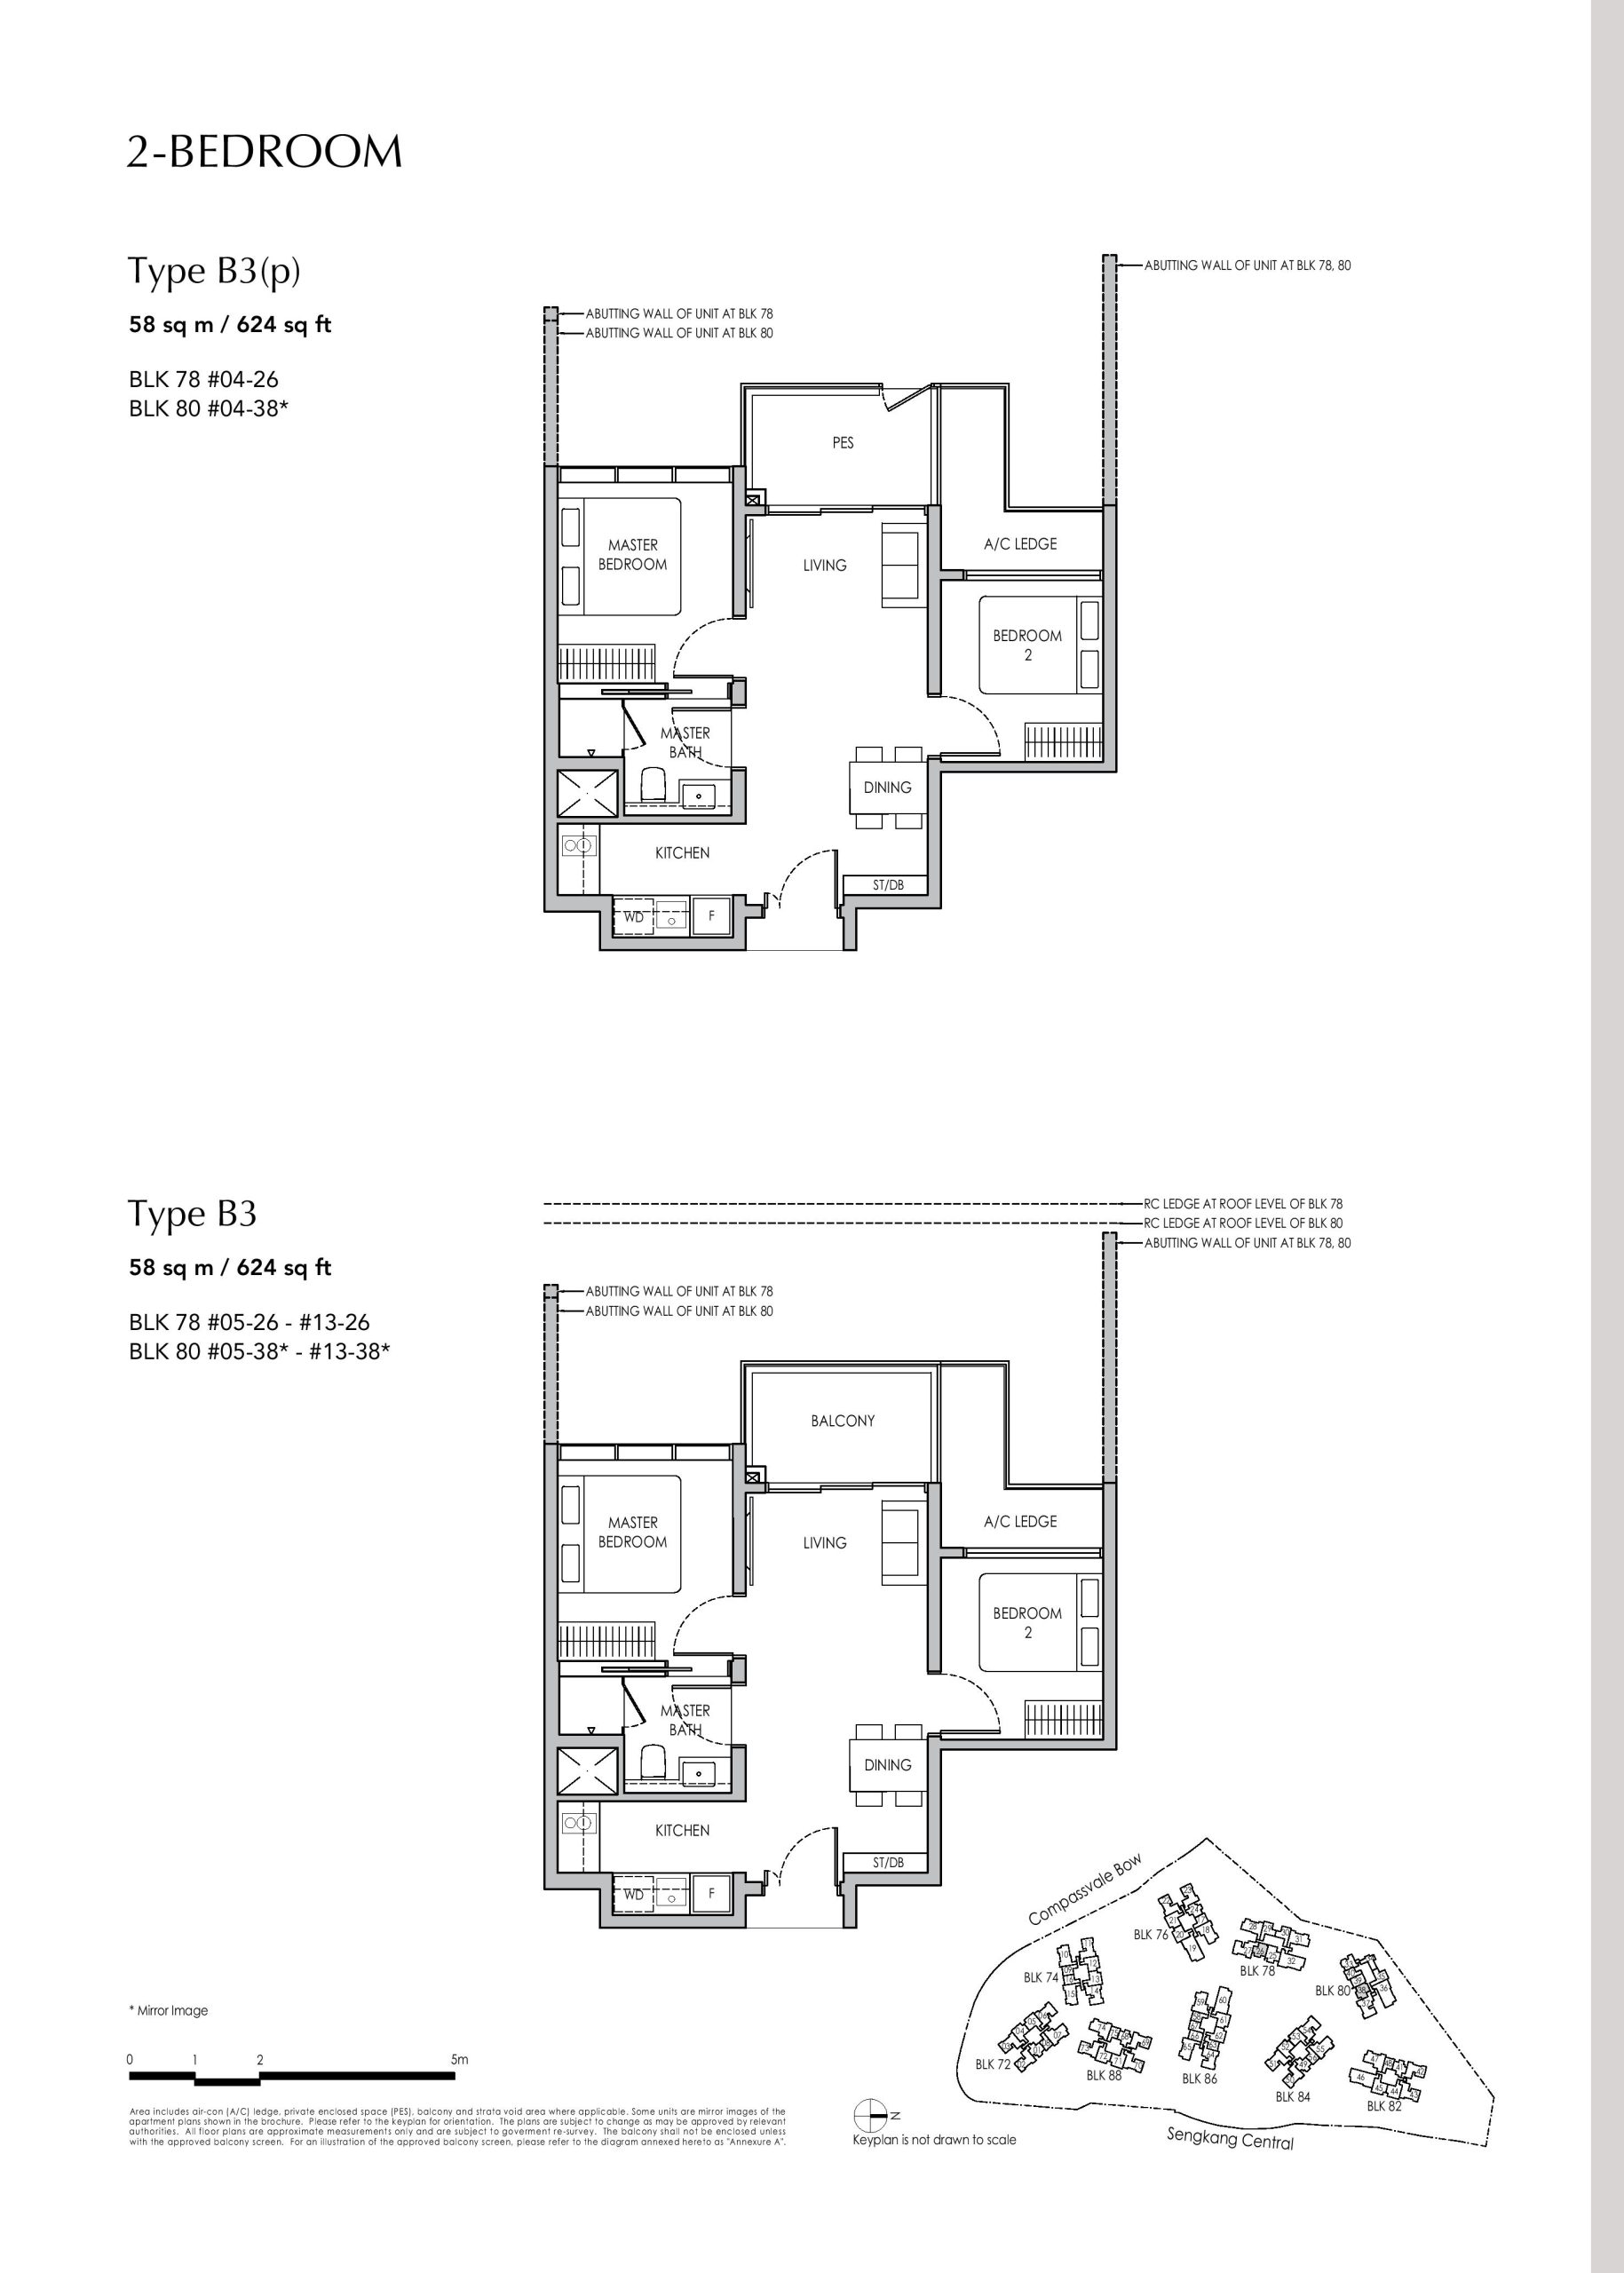 Sengkang Grand Residences 2 Bedroom Type B3(p), B3 Floor Plans